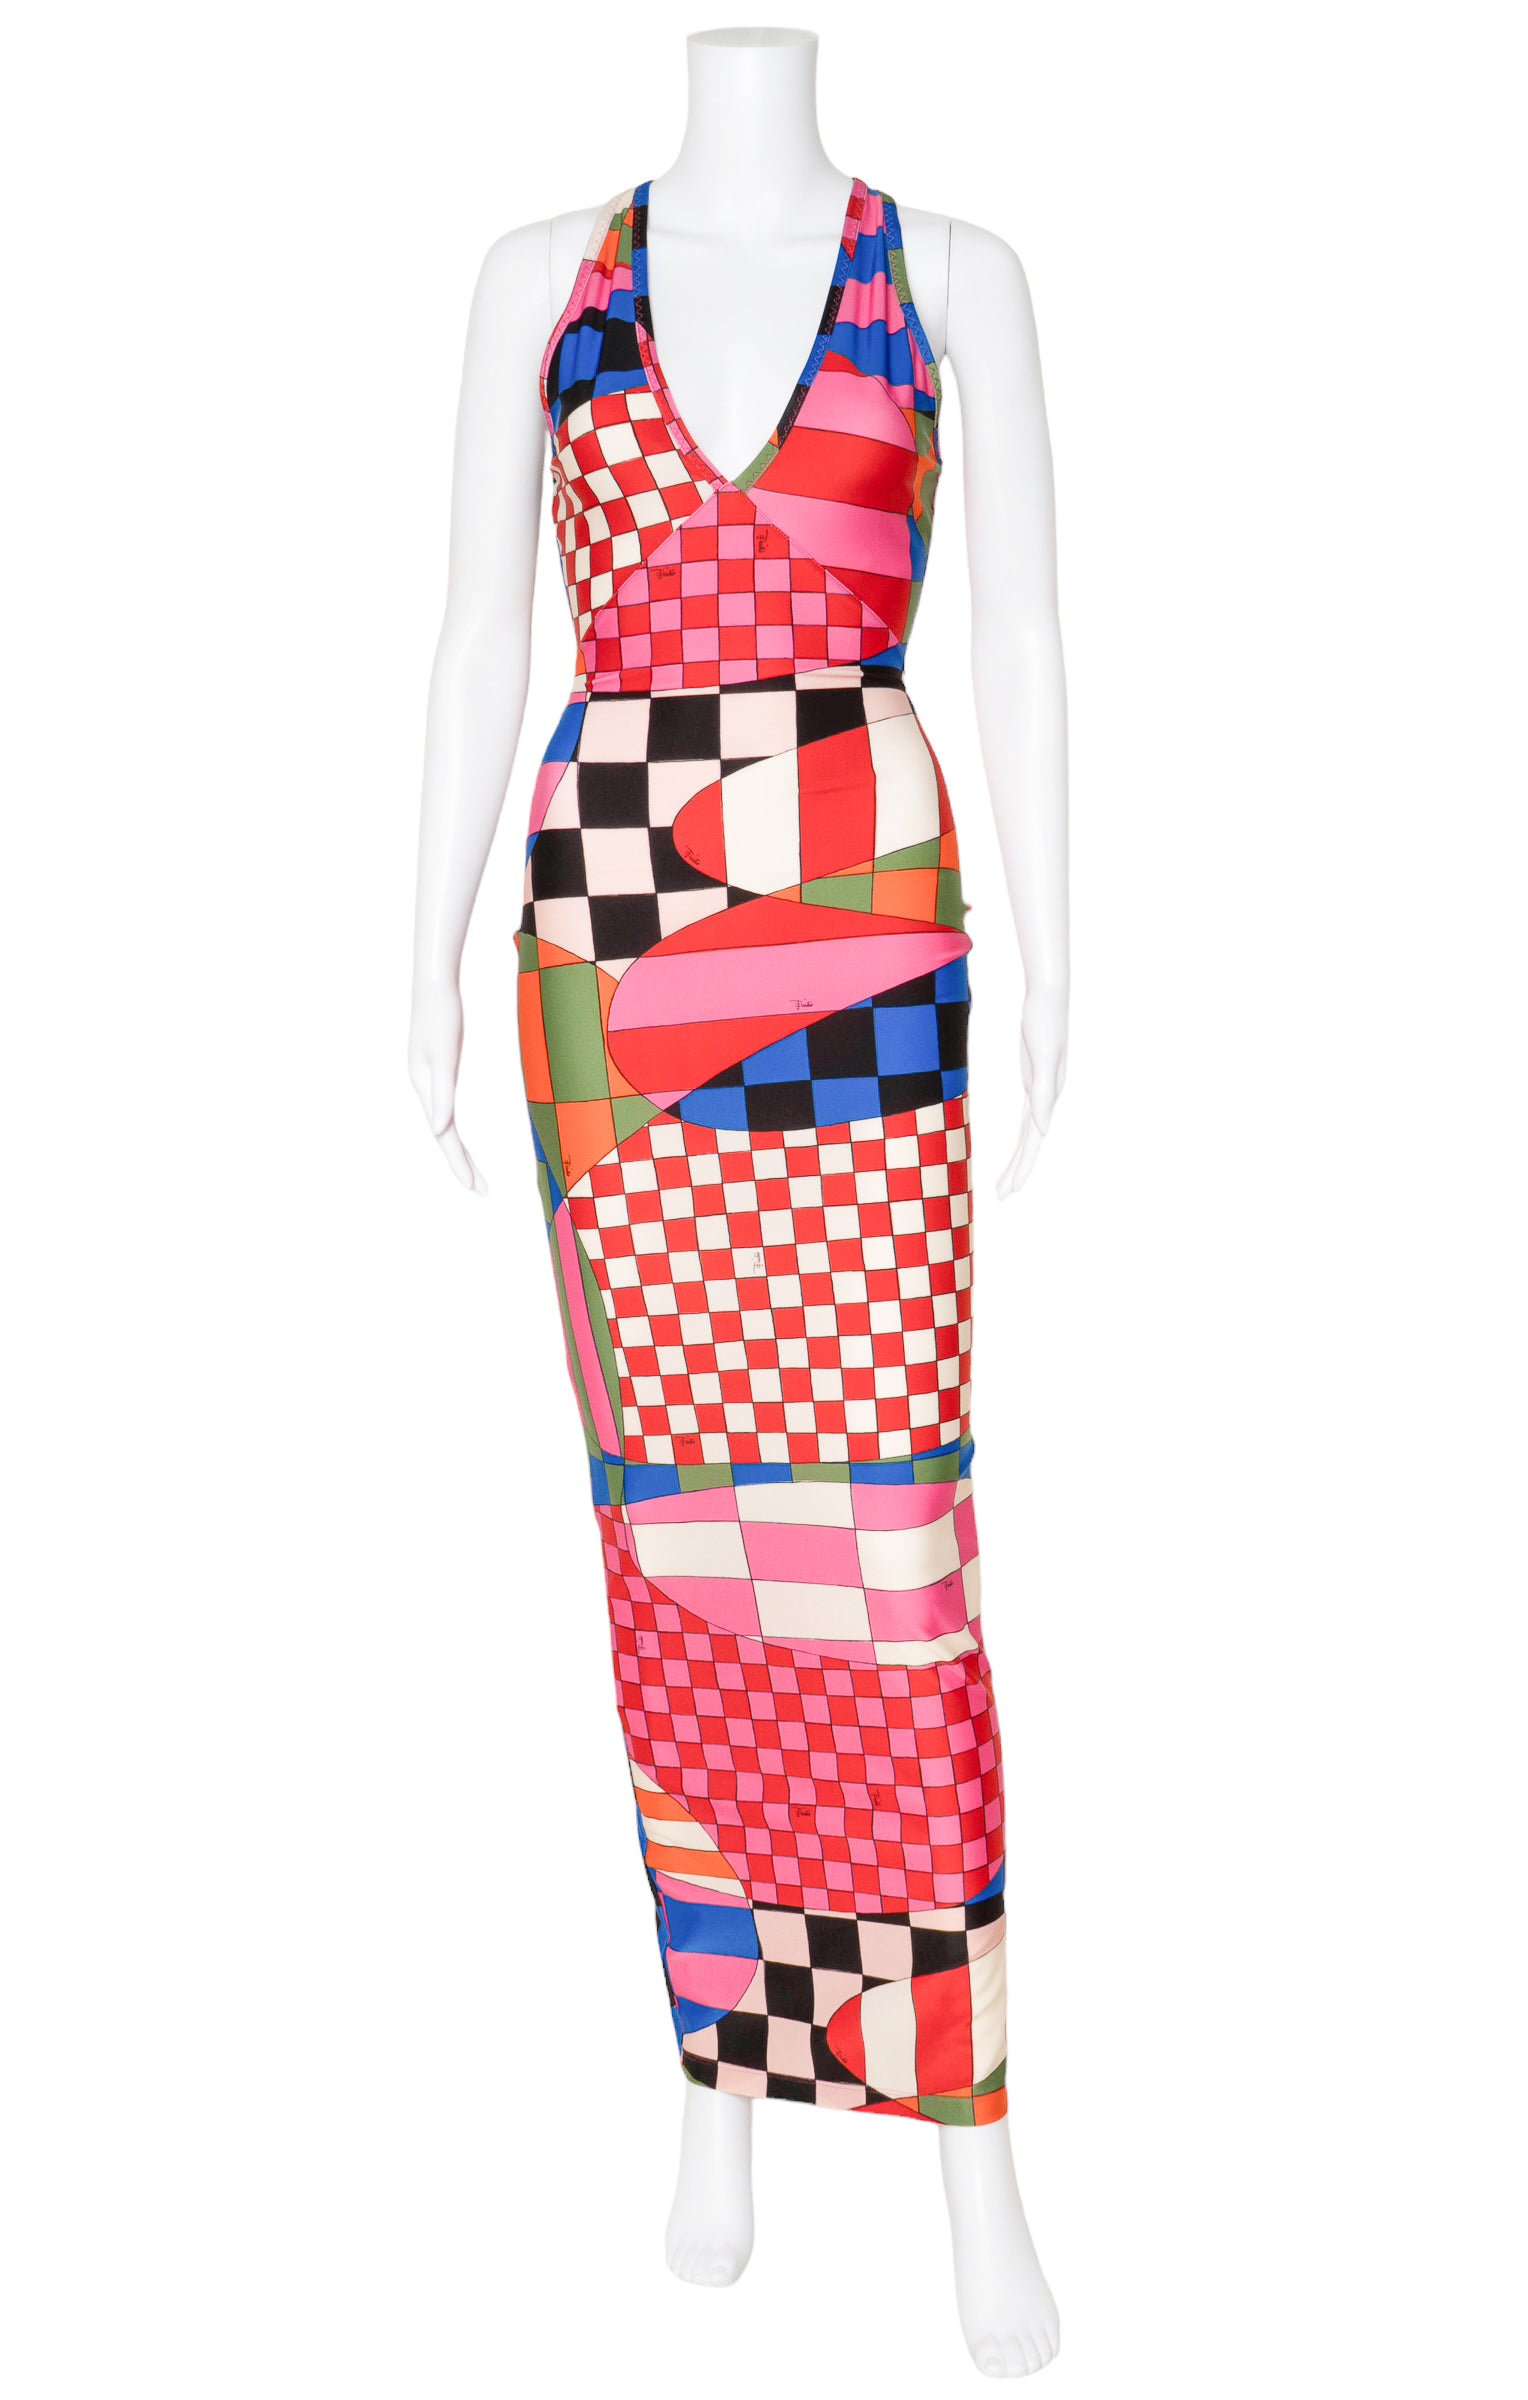 EMILIO PUCCI (RARE) Dress Size: No size tags, fits like XS